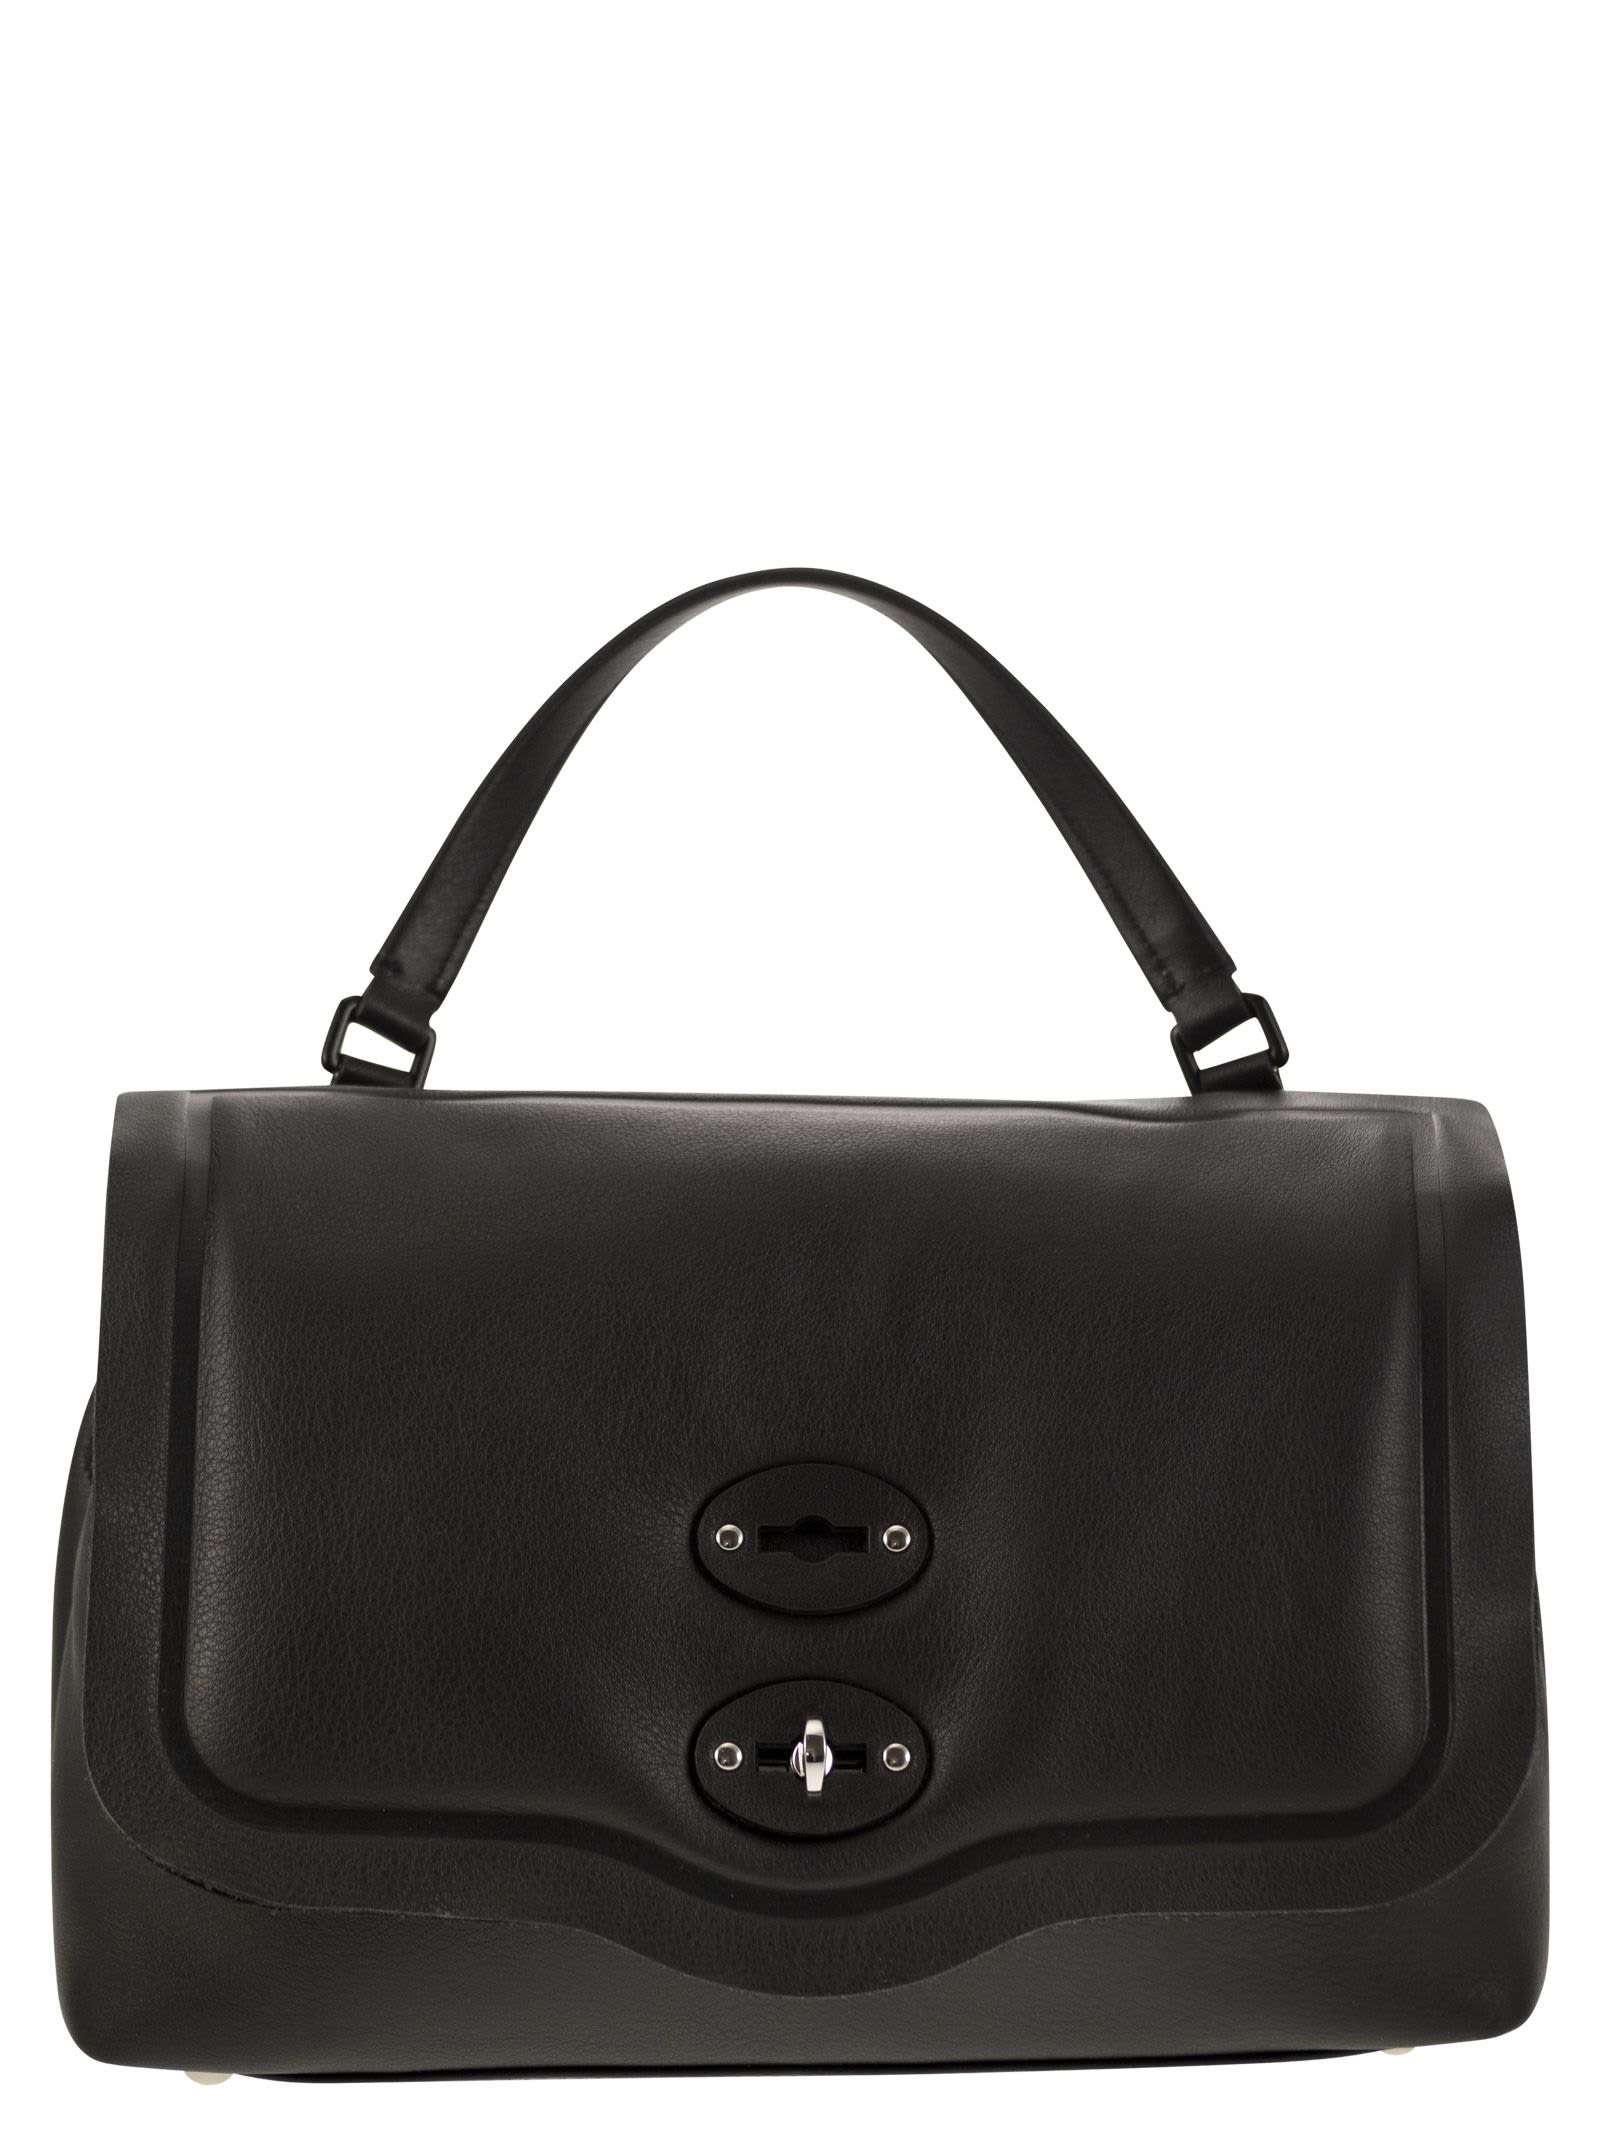 Zanellato Postina Pillow - S Handbag In Black